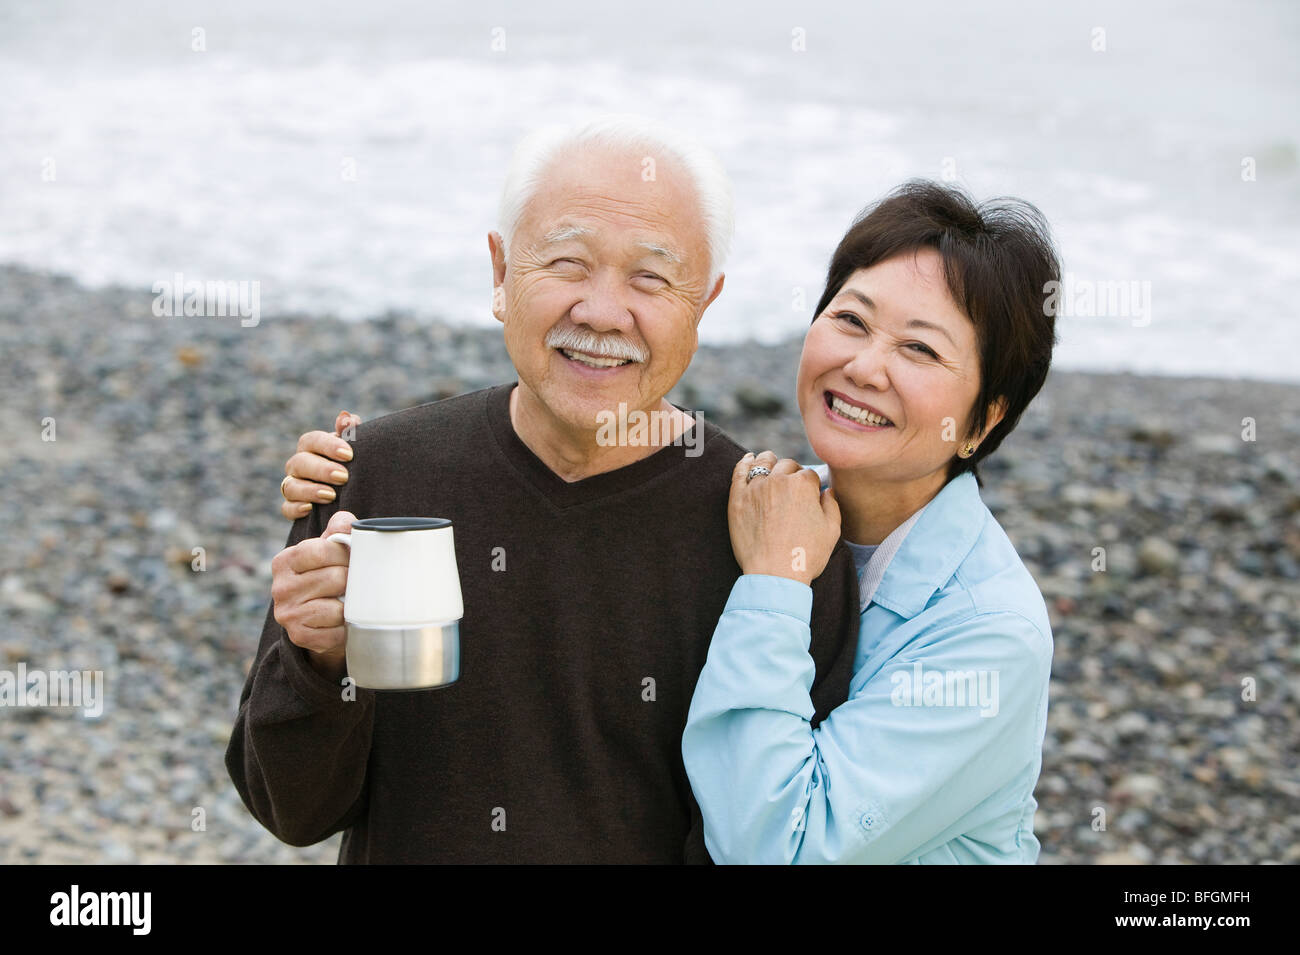 Senior couple at beach looking at camera Stock Photo